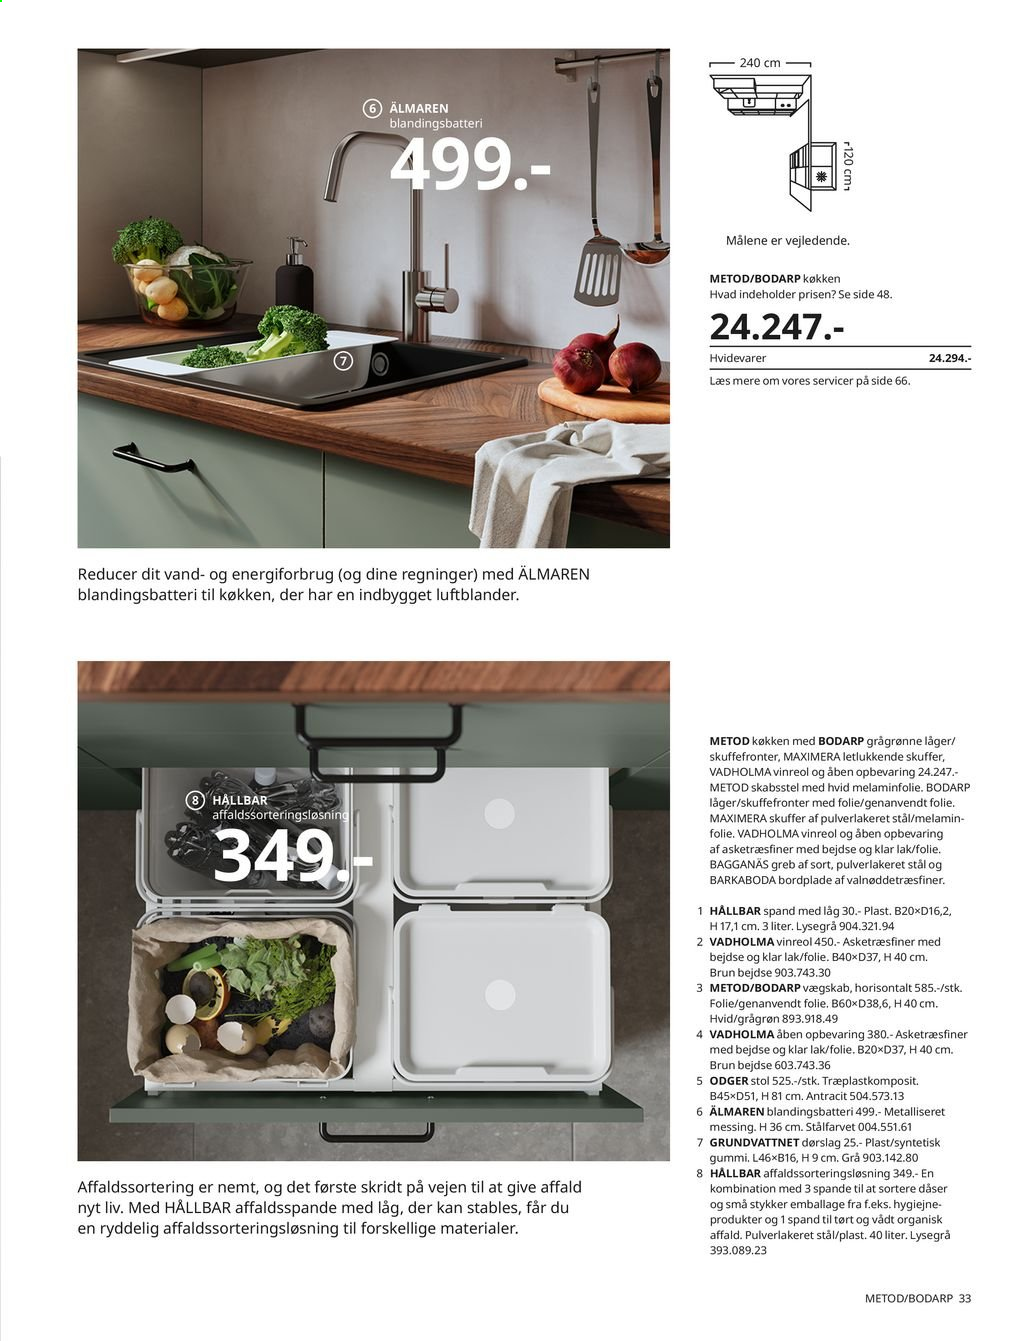 IKEA tilbudsavis . Side 33.